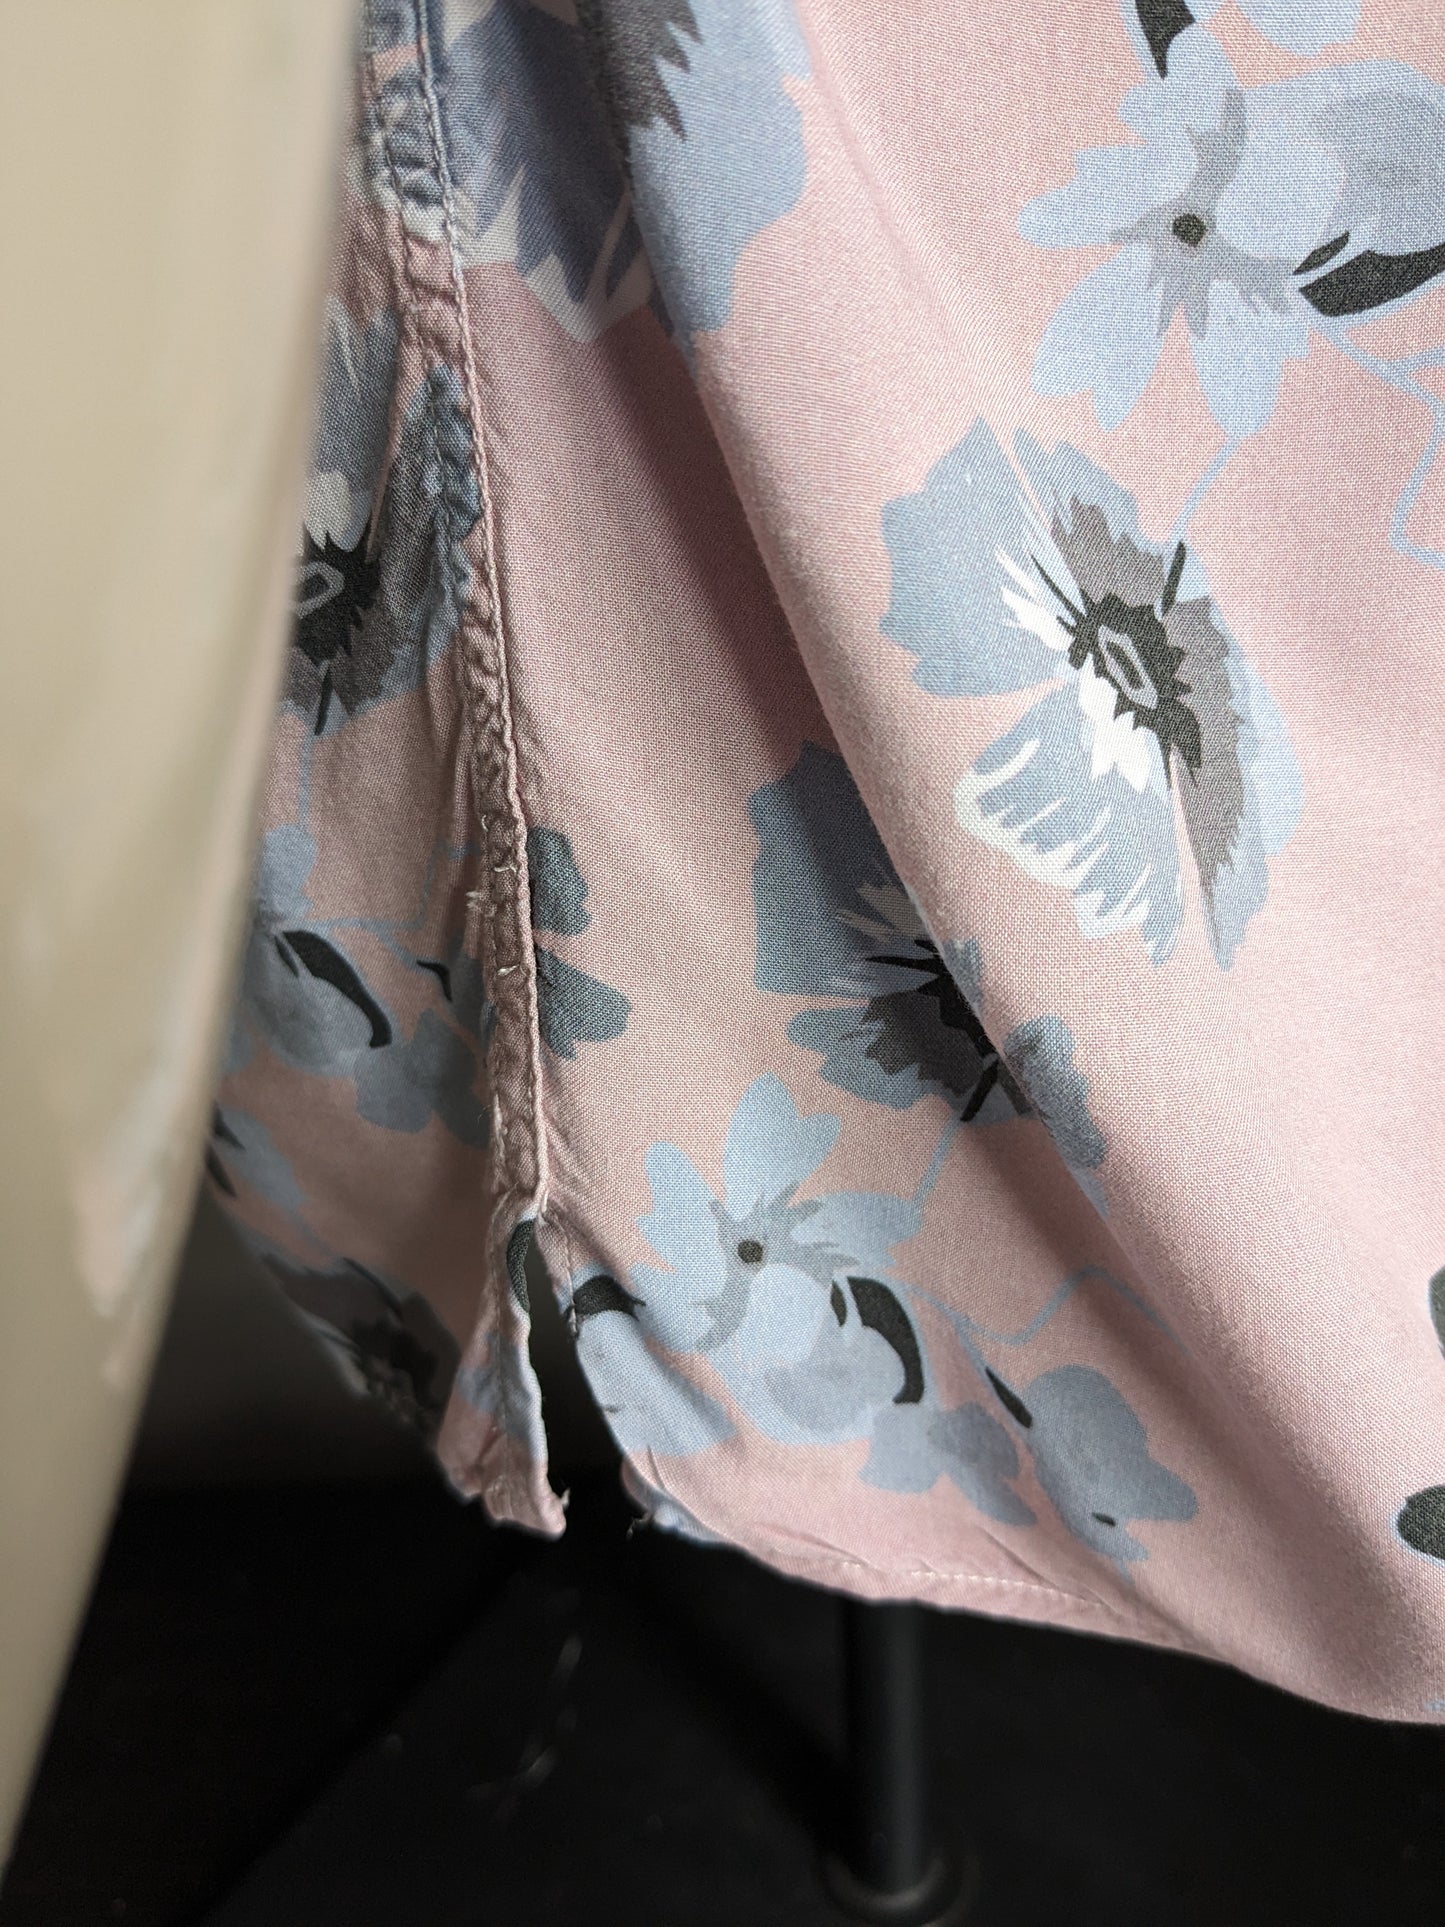 Shirt manica corta di Zara Man. Floreale rosa grigio. Taglia M. Slimt fit.